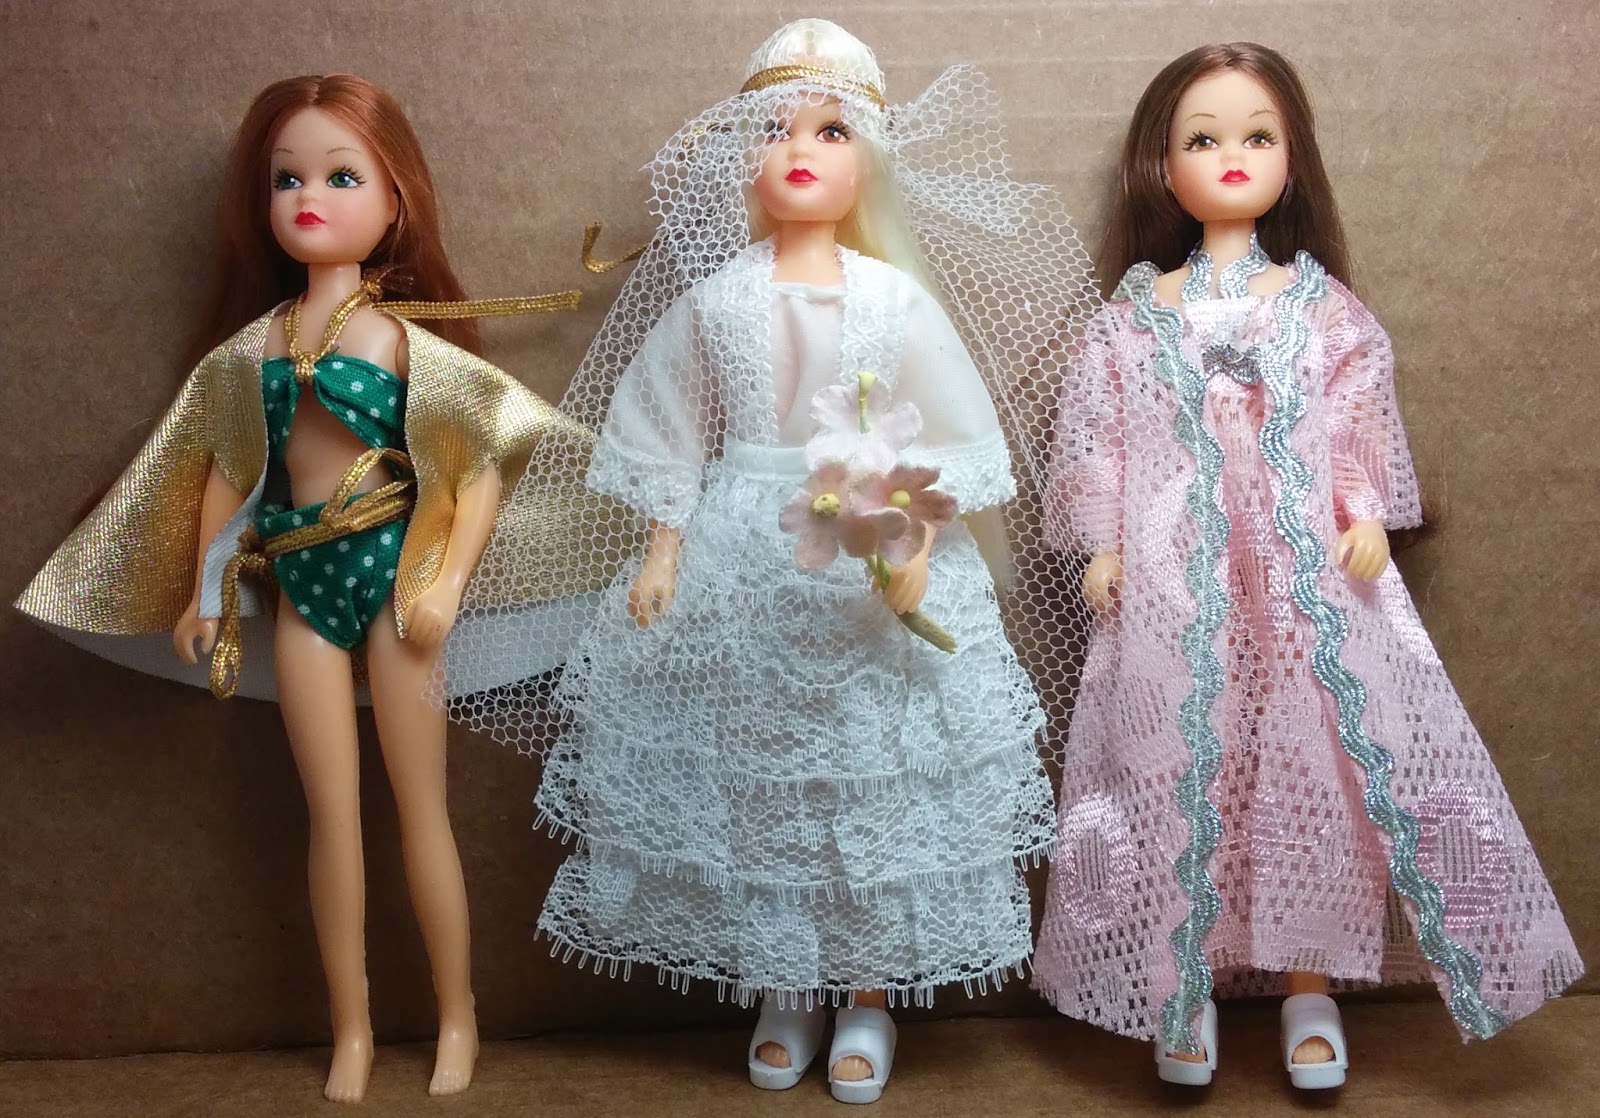 Vintage topper dawn/glitter girls dolls "GLITTER GIRL" "GLITTER DREAM"